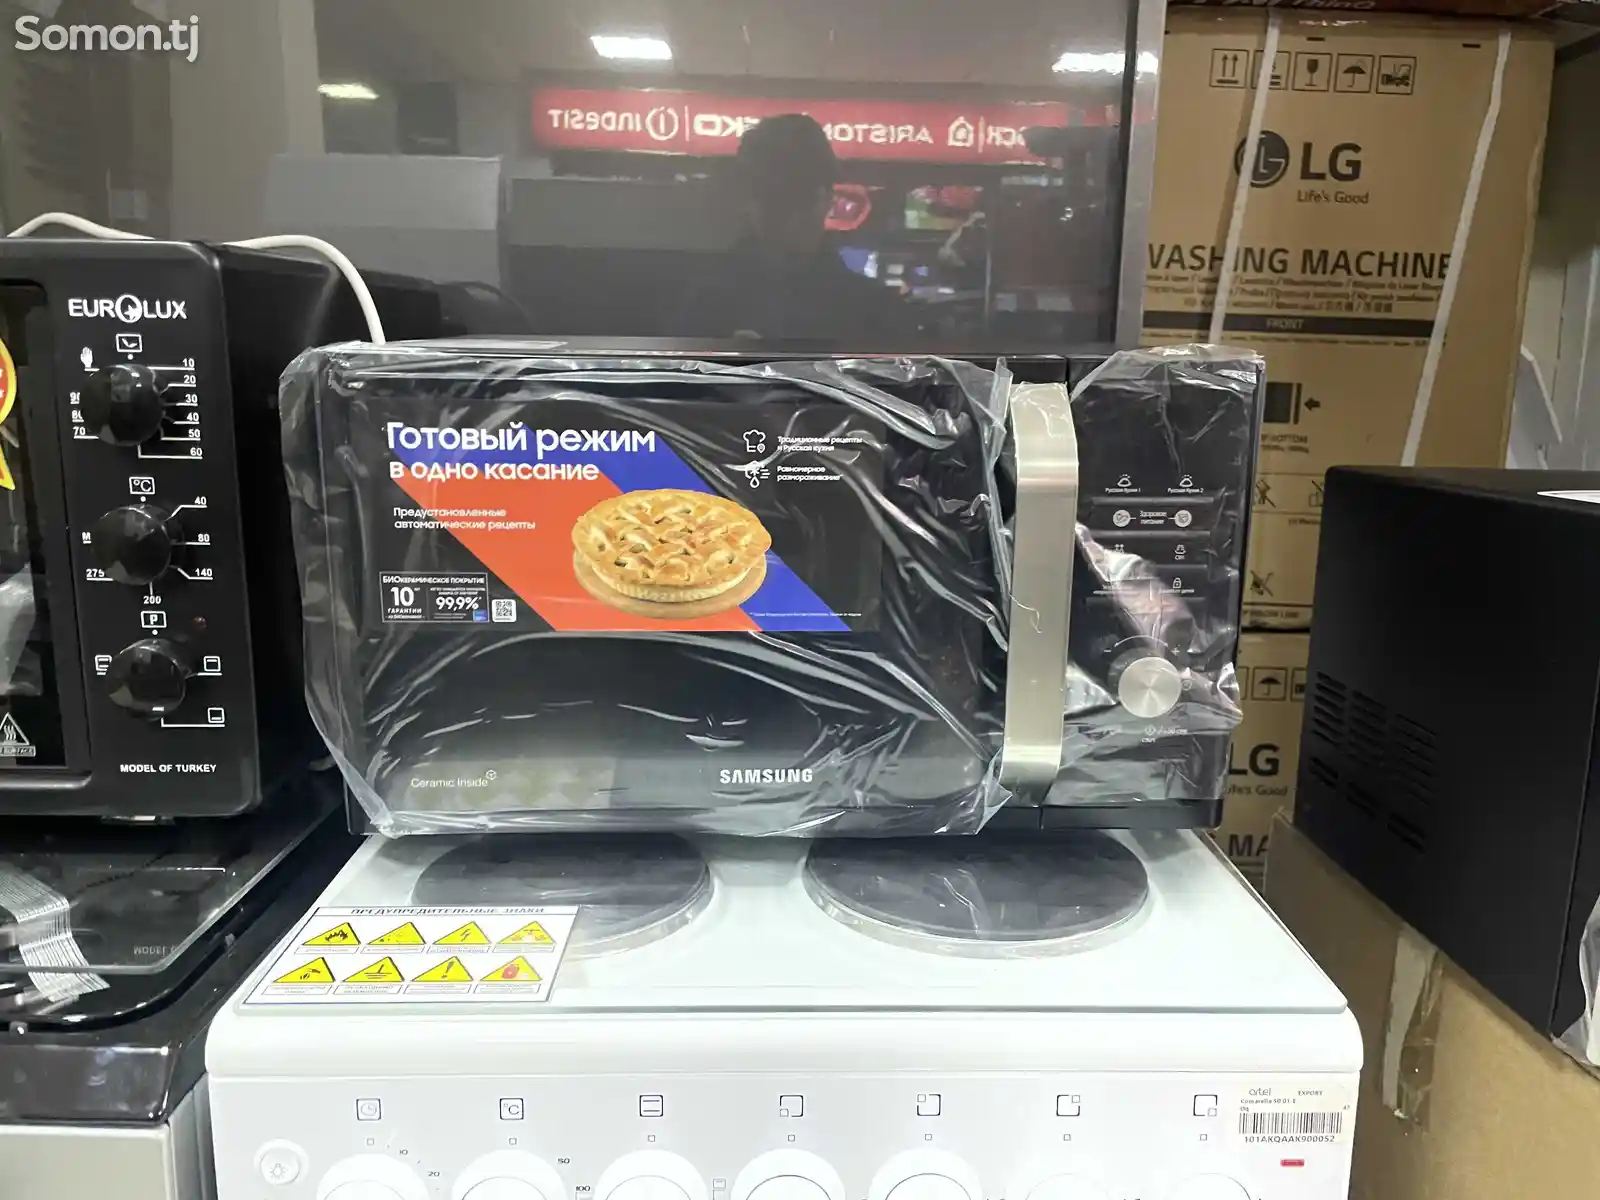 Микроволновая печь Samsung-2